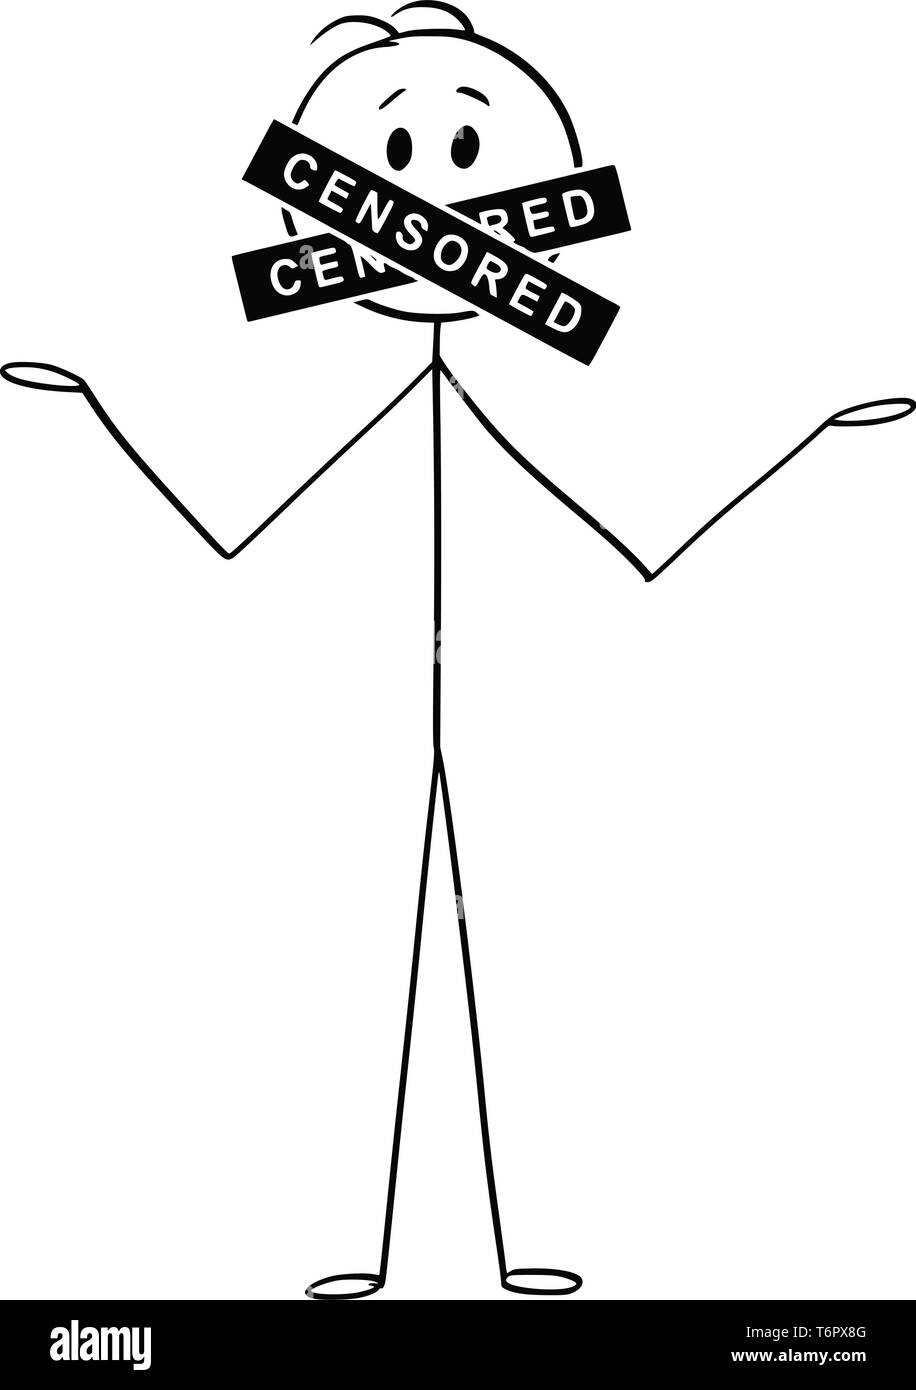 Cartoon Strichmännchen Zeichnen konzeptionelle Darstellung der sprechenden Mann mit zensiert Bar oder Zeichen für seinen Mund. Konzept der Meinungsfreiheit und Zensur. Stock Vektor